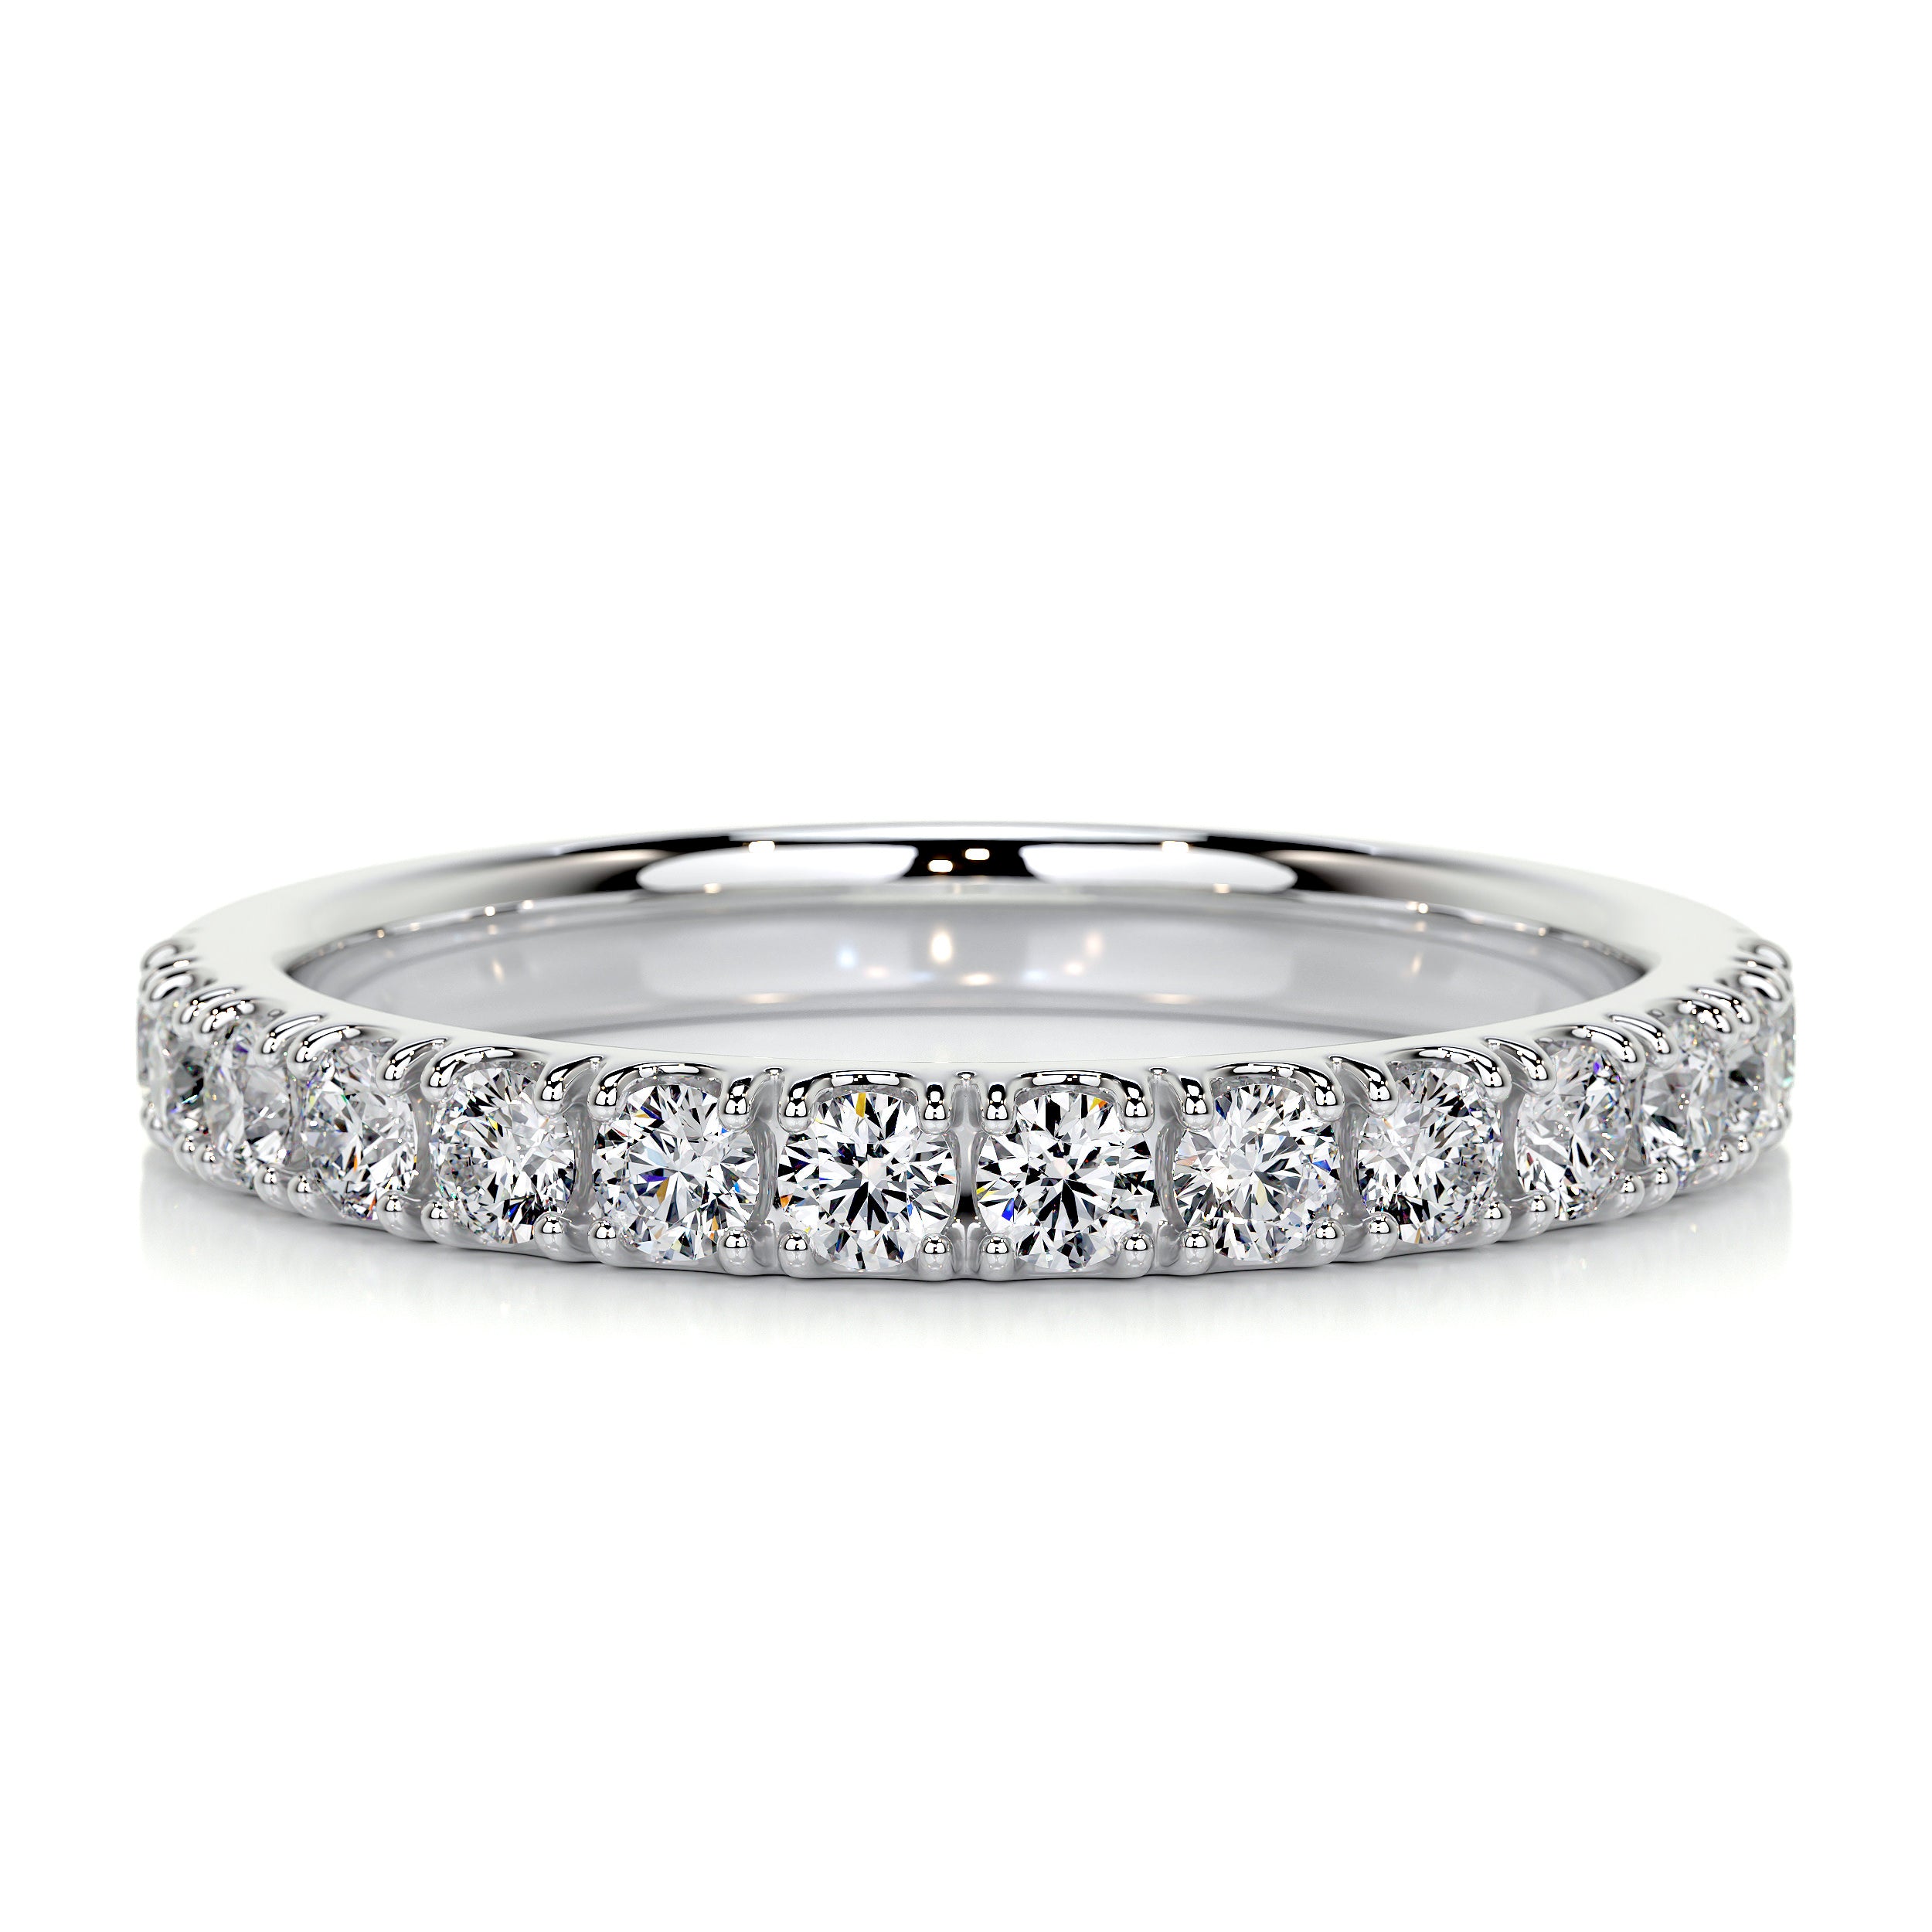 Blair Diamond Wedding Ring   (0.5 Carat) -18K White Gold